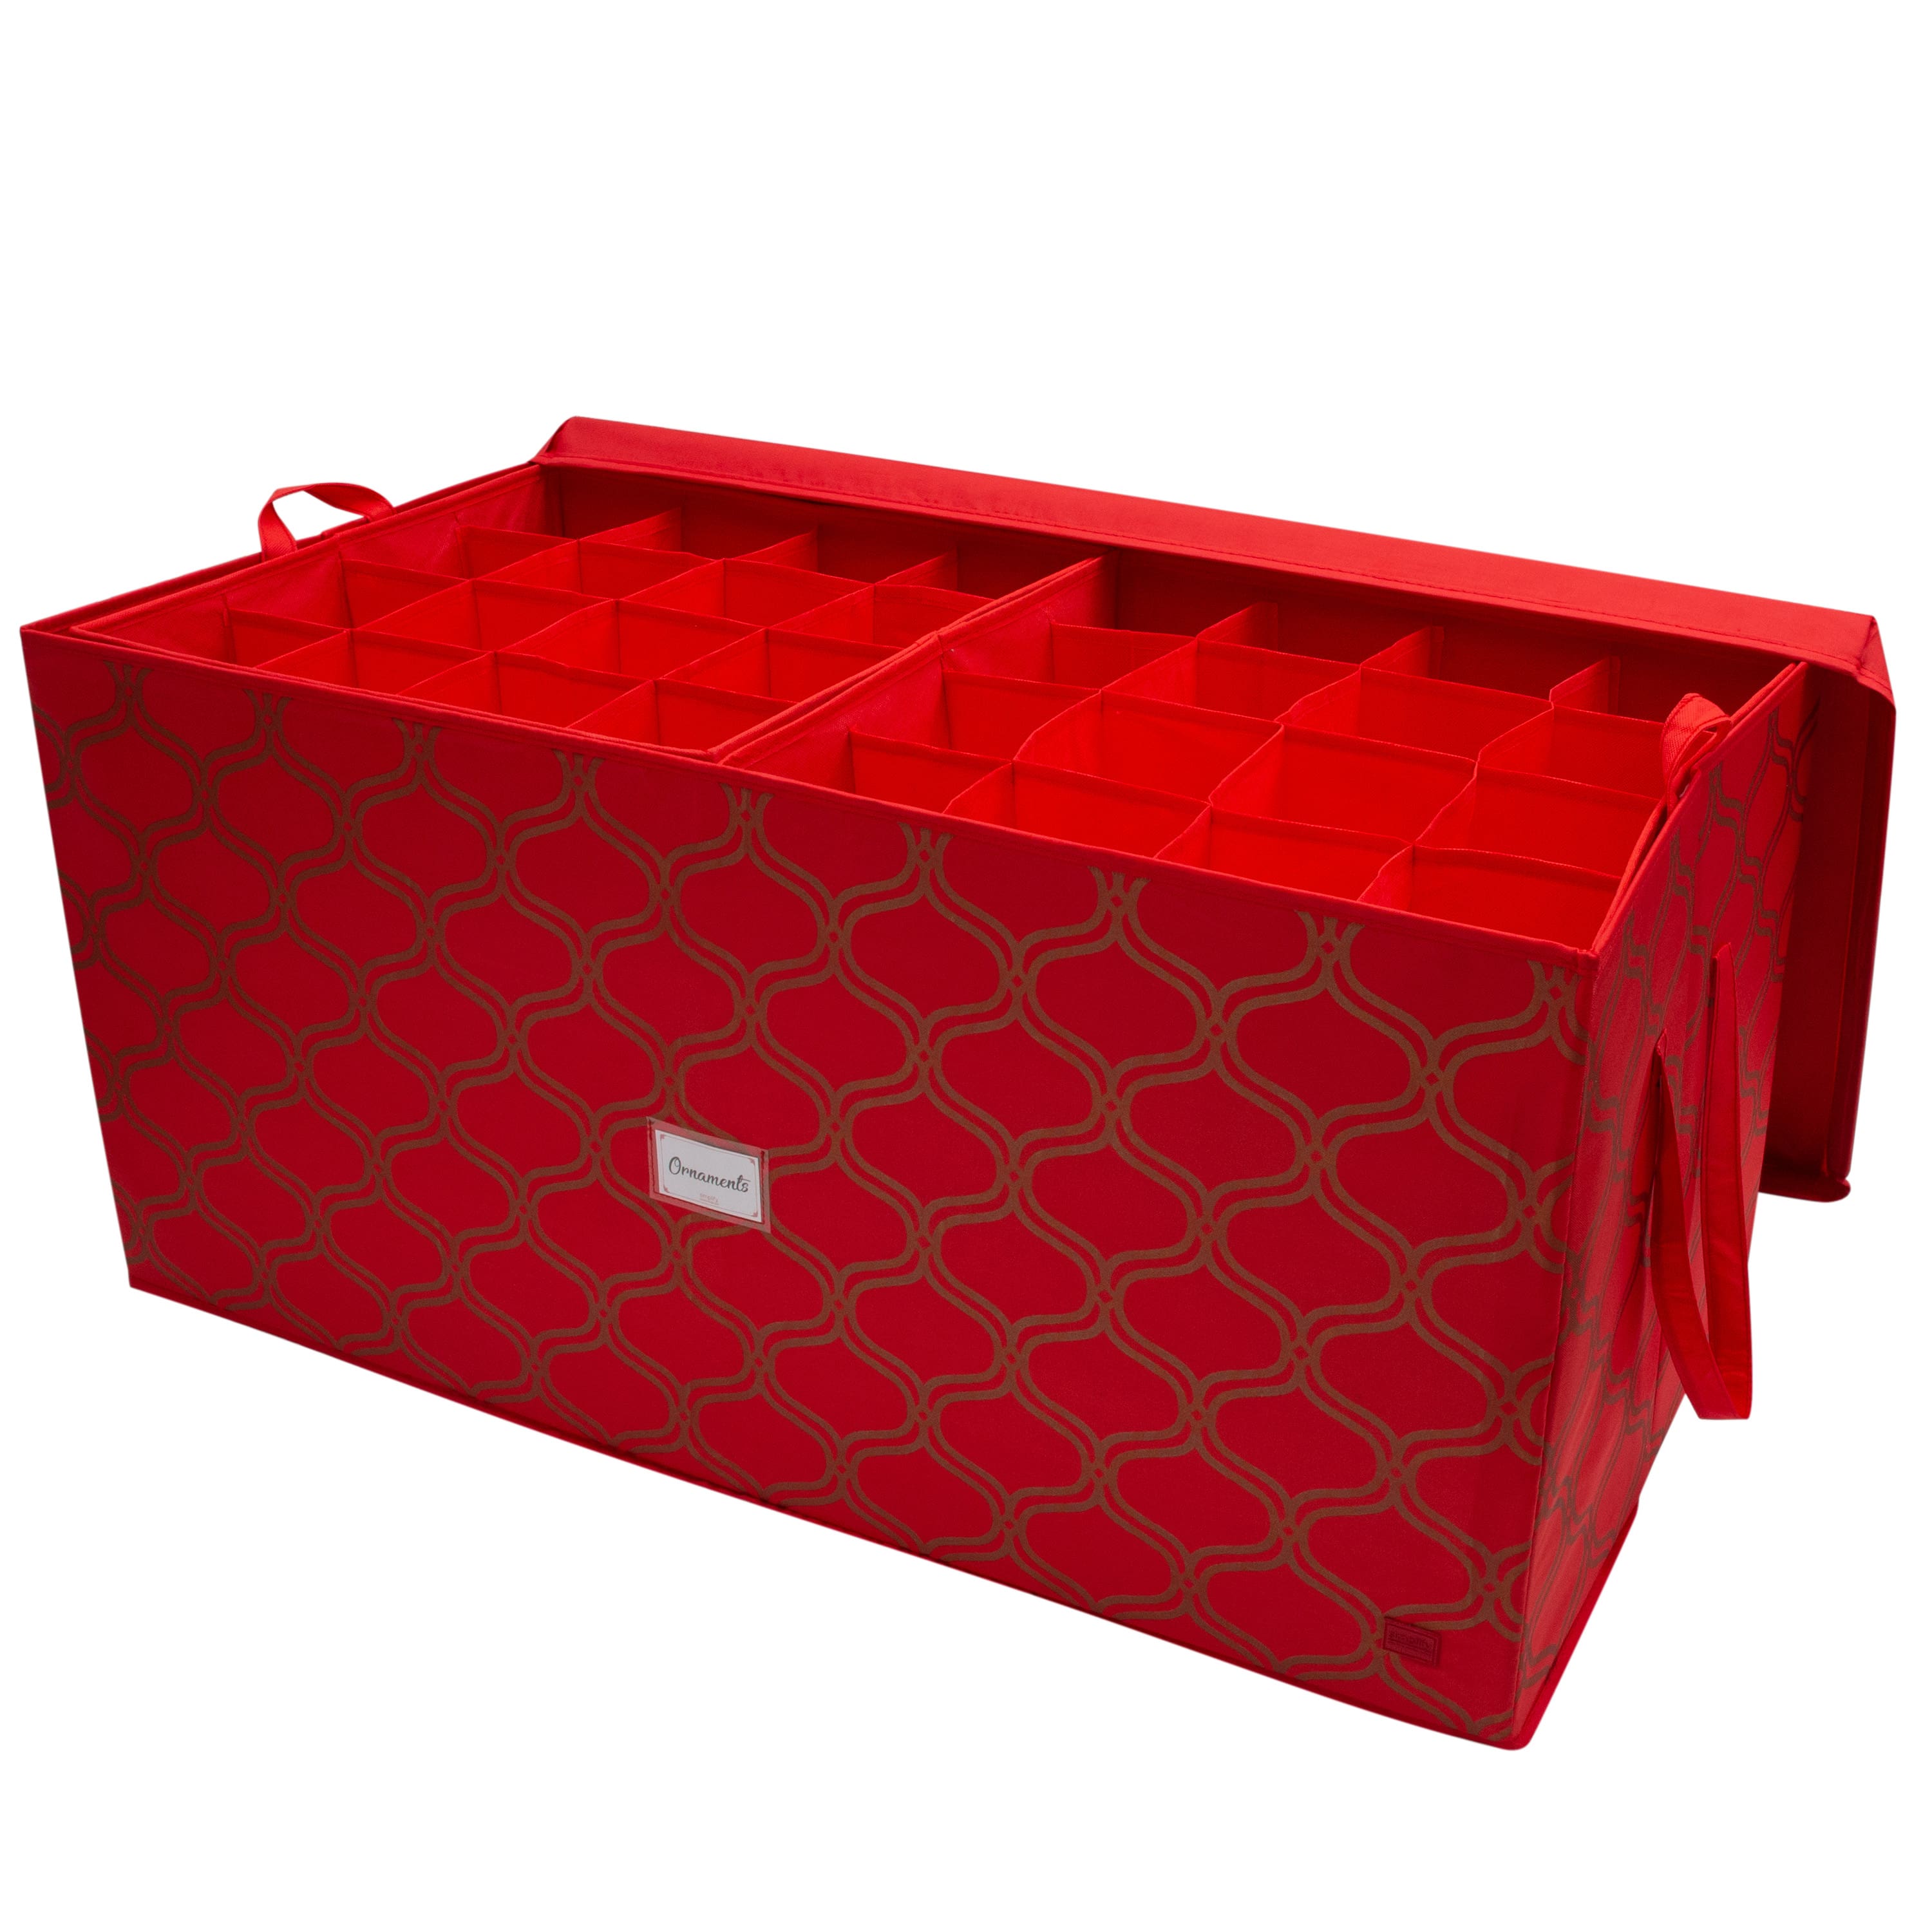 Sterilite 2-Layer Red Ornament Storage Box  Red ornaments, Ornament  storage, Ornament storage box